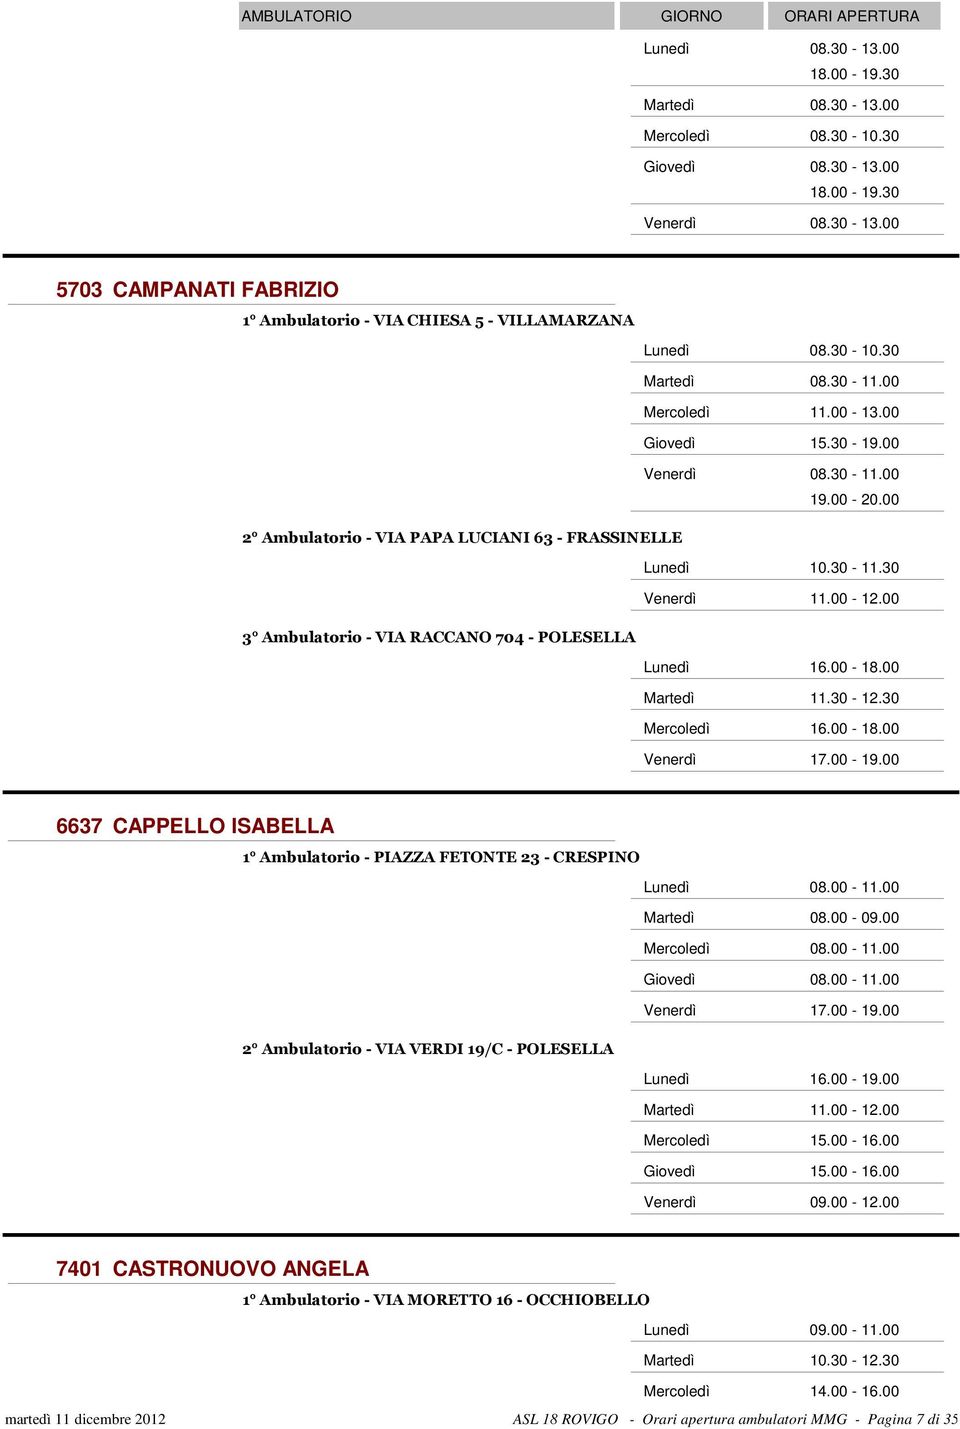 30 6637 CAPPELLO ISABELLA 1 Ambulatorio - PIAZZA FETONTE 23 - CRESPINO 08.00-11.00 08.00-09.00 08.00-11.00 08.00-11.00 2 Ambulatorio - VIA VERDI 19/C - POLESELLA 15.00-16.